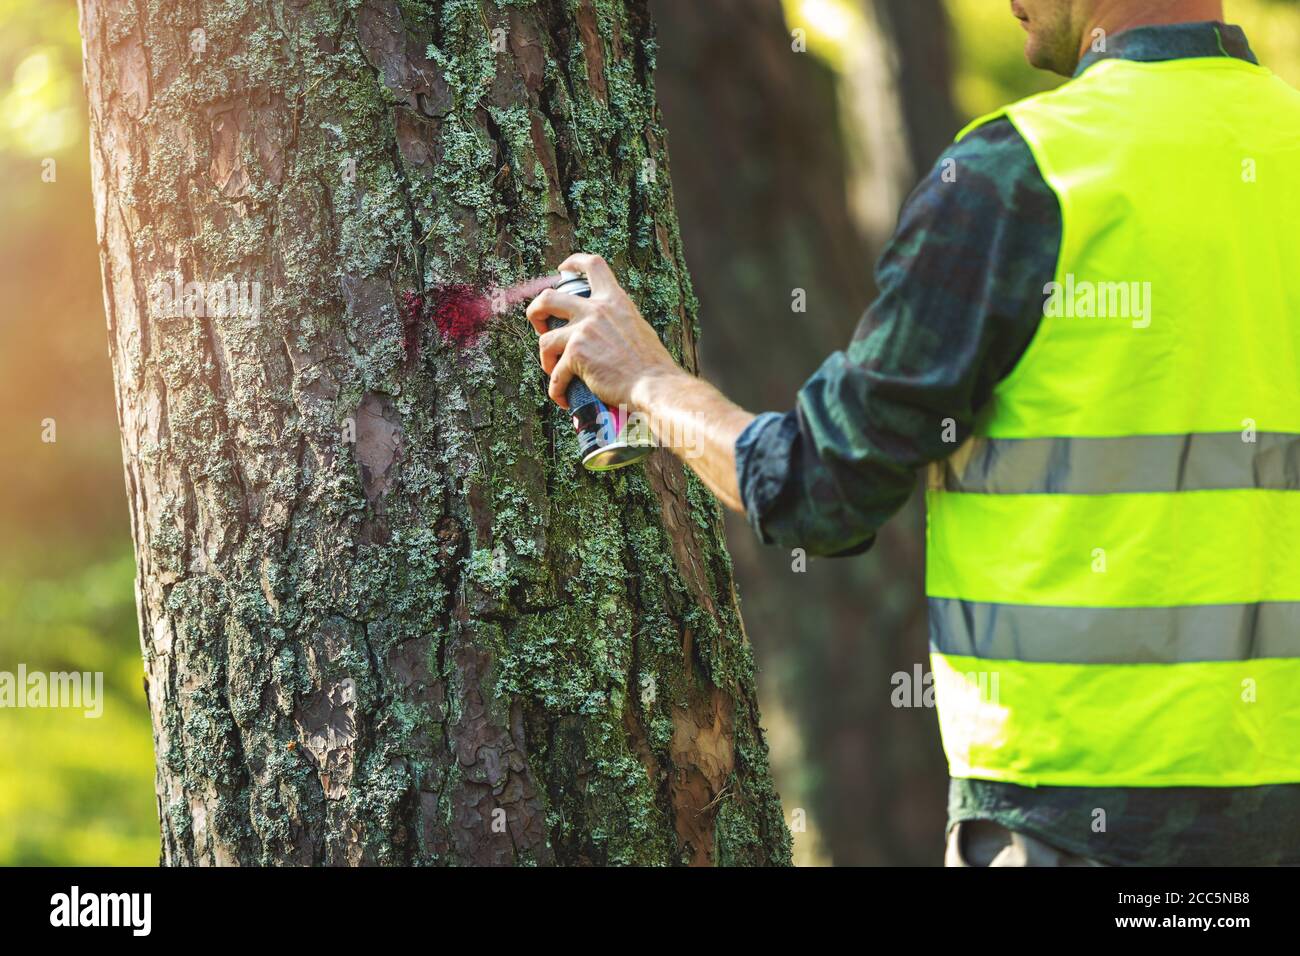 industria maderera - ingeniero forestal marcando tronco de árbol con rojo aerosol para cortar en el proceso de deforestación Foto de stock